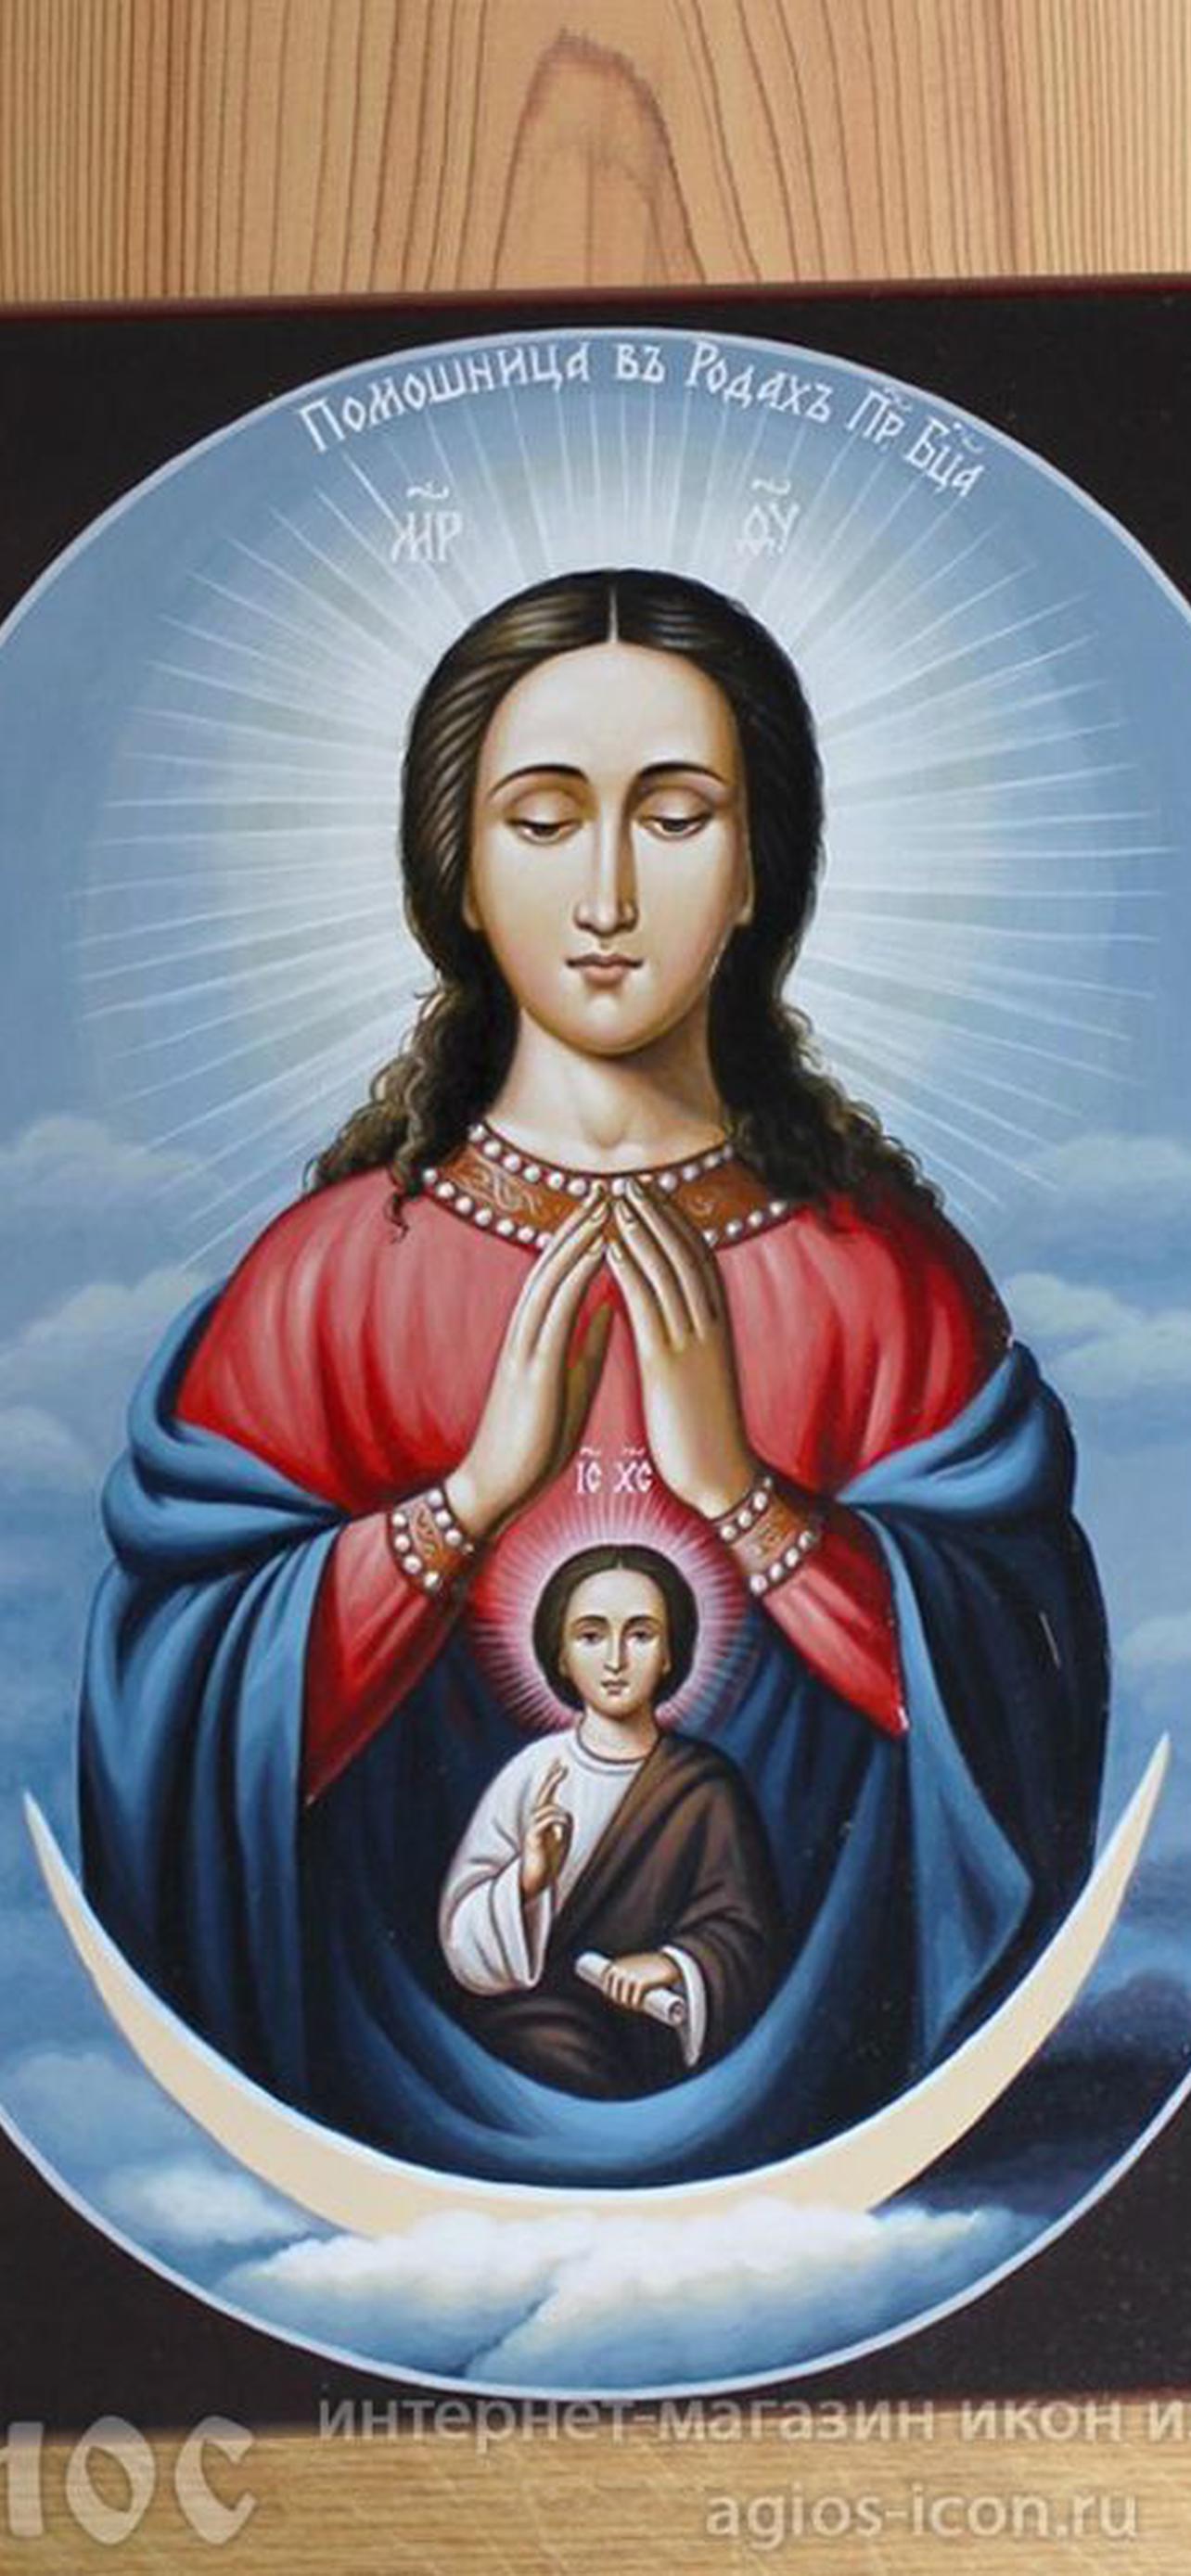 икона божией матери помощница в родах фото